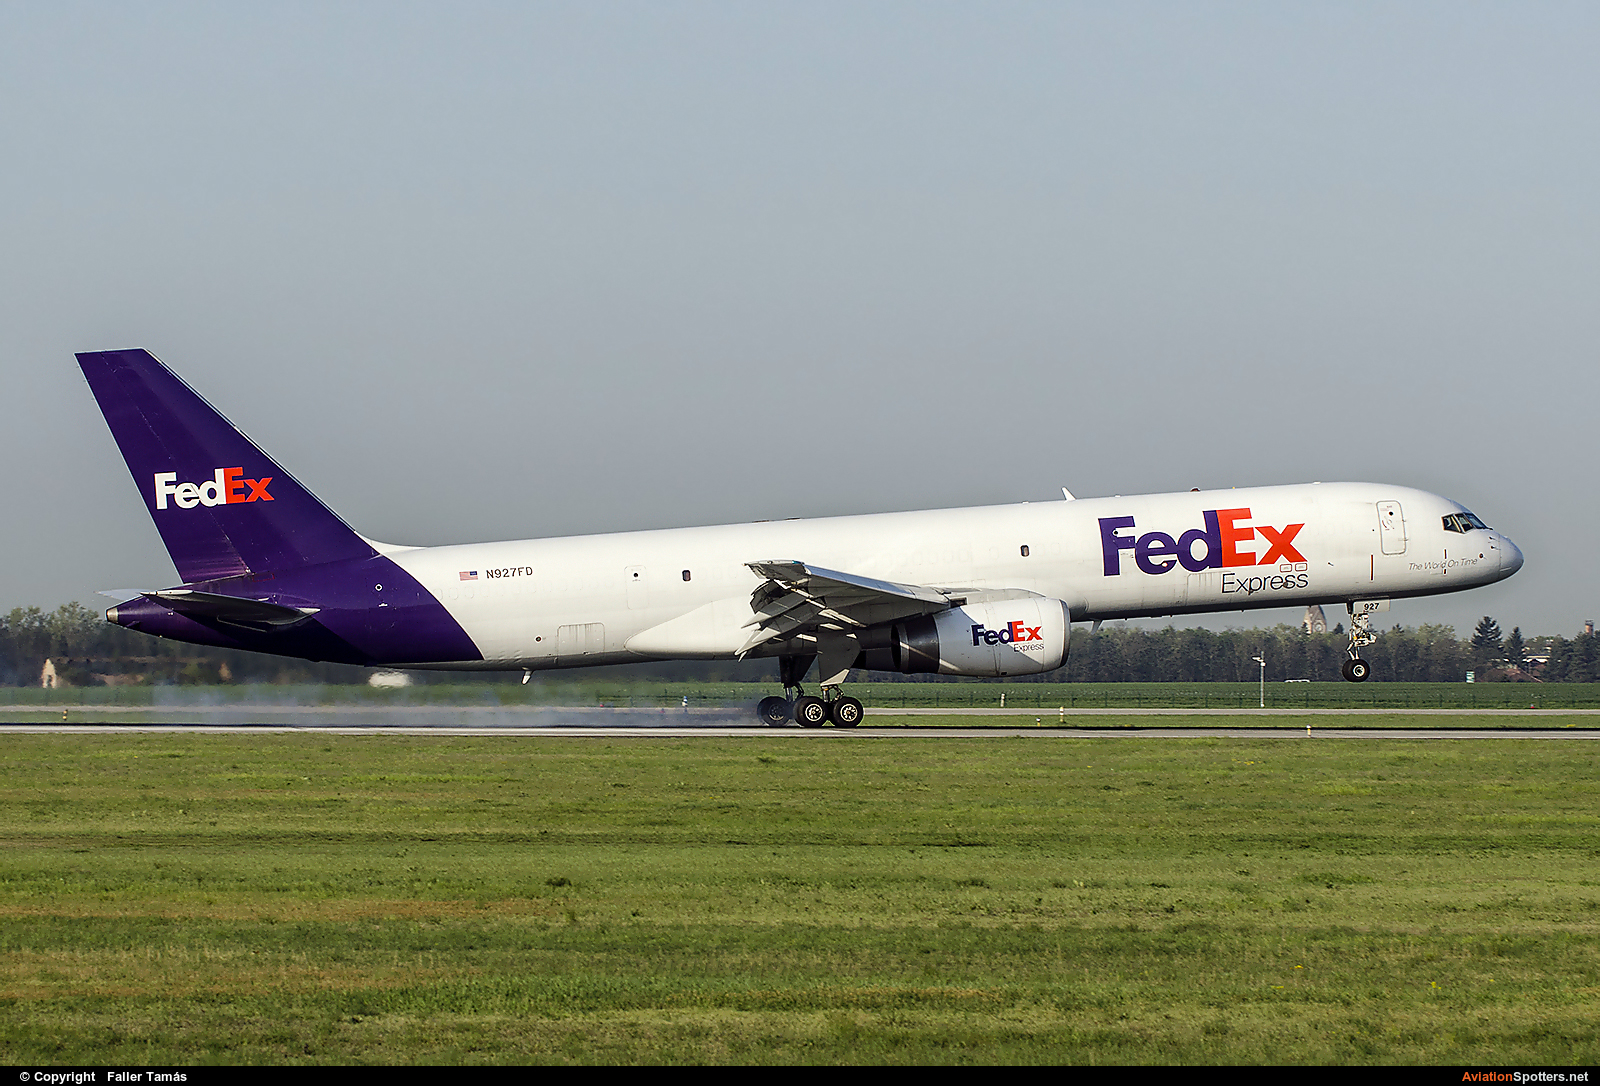 FedEx Federal Express  -  757-200F  (N927FD) By Faller Tamás (fallto78)